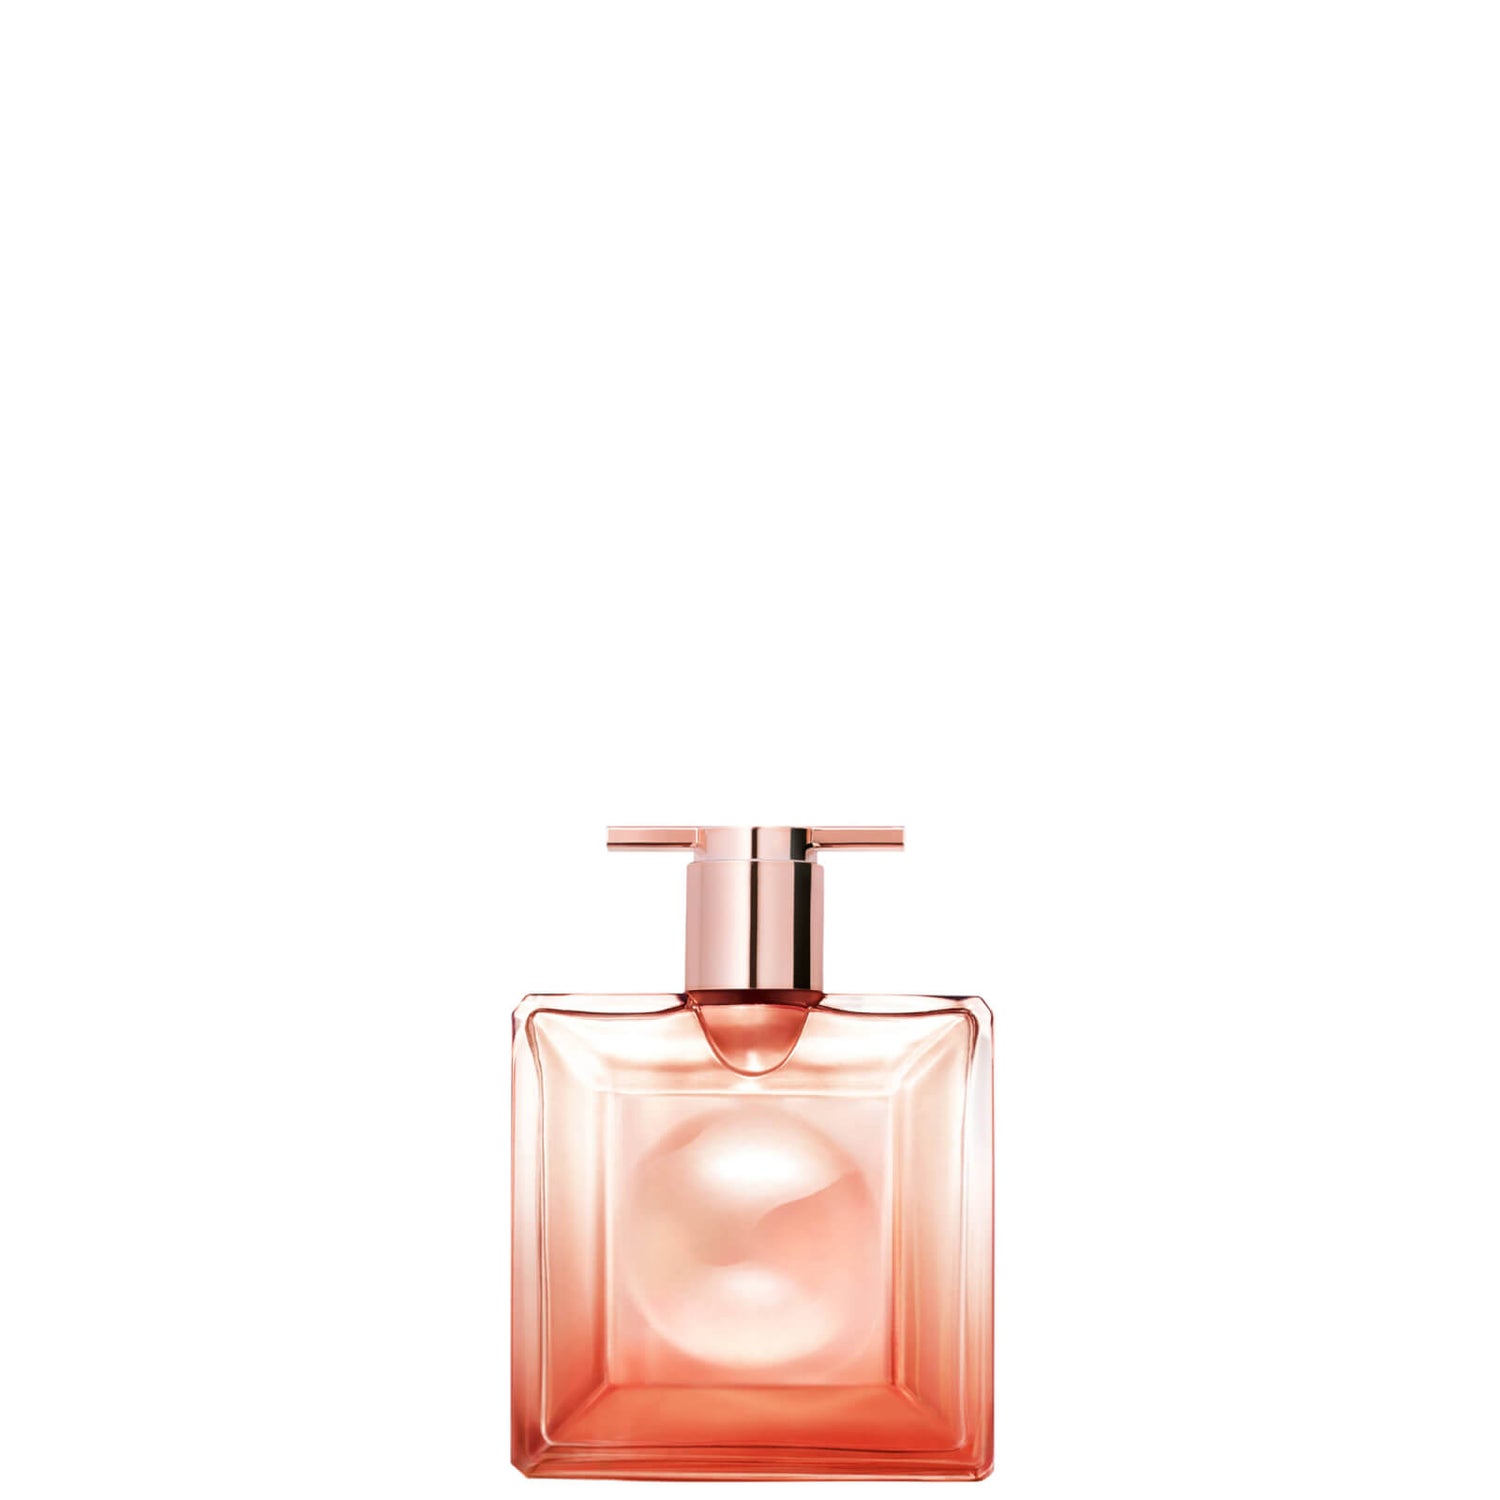 Lancôme Idôle Now Eau de Parfum 25ml